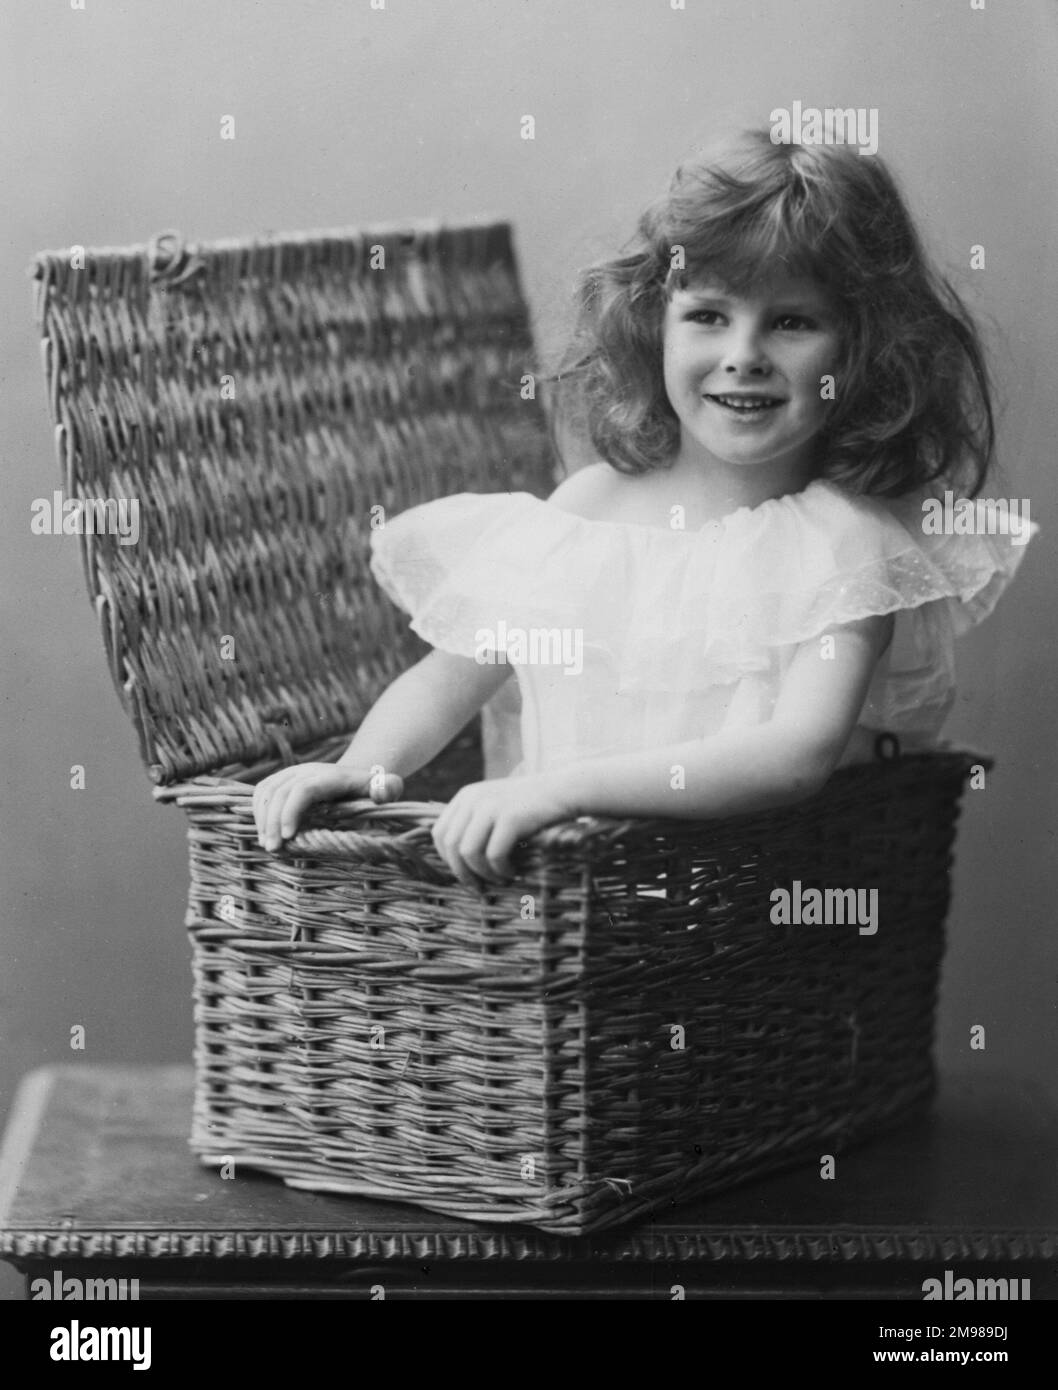 Ein junges Mädchen in einem Korb. Stockfoto